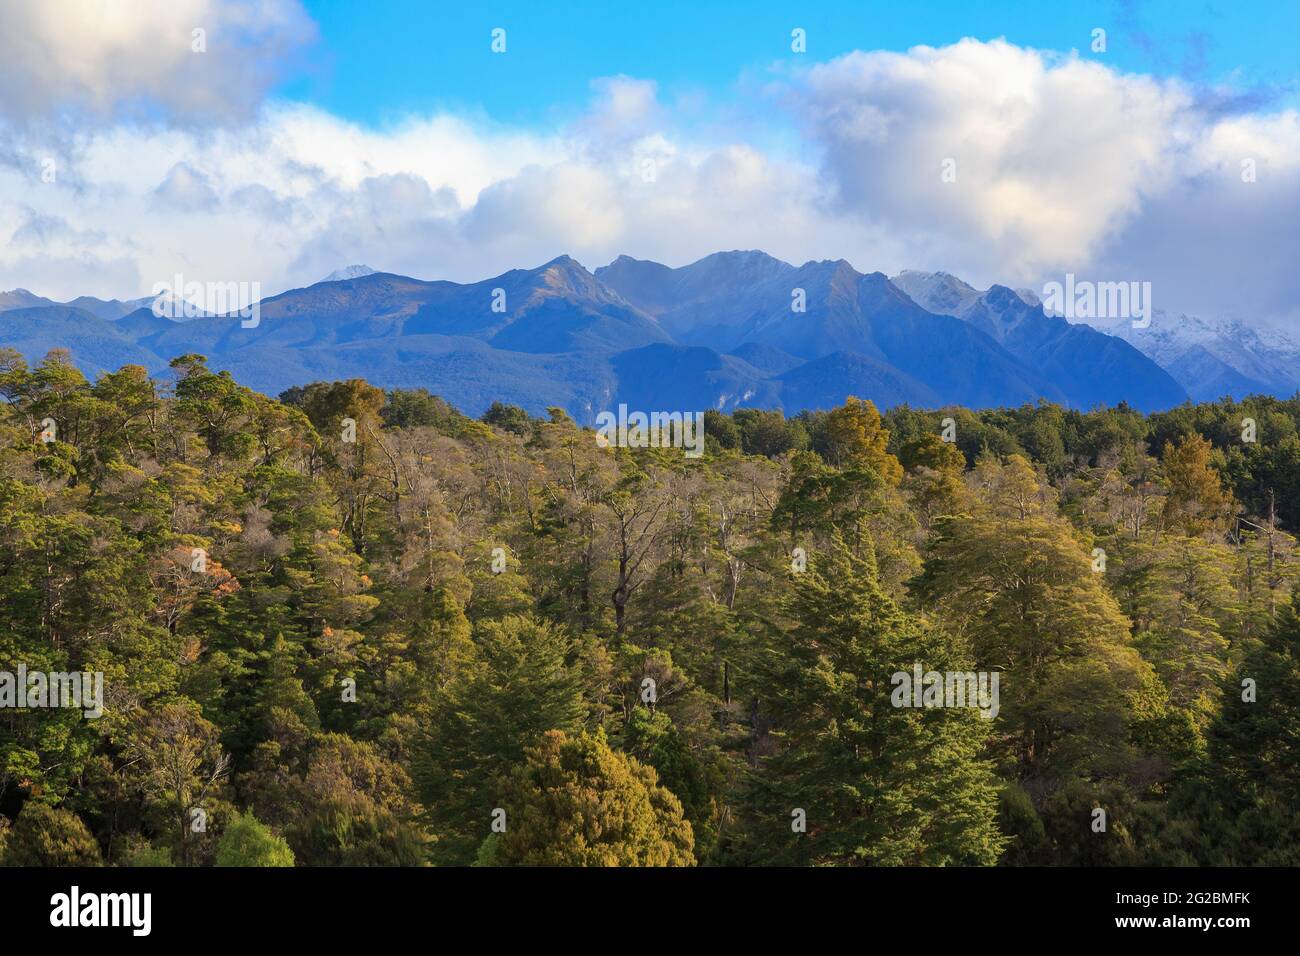 Landschaft in Fiordland, Neuseeland. Berge erheben sich aus dichtem Urwald Stockfoto